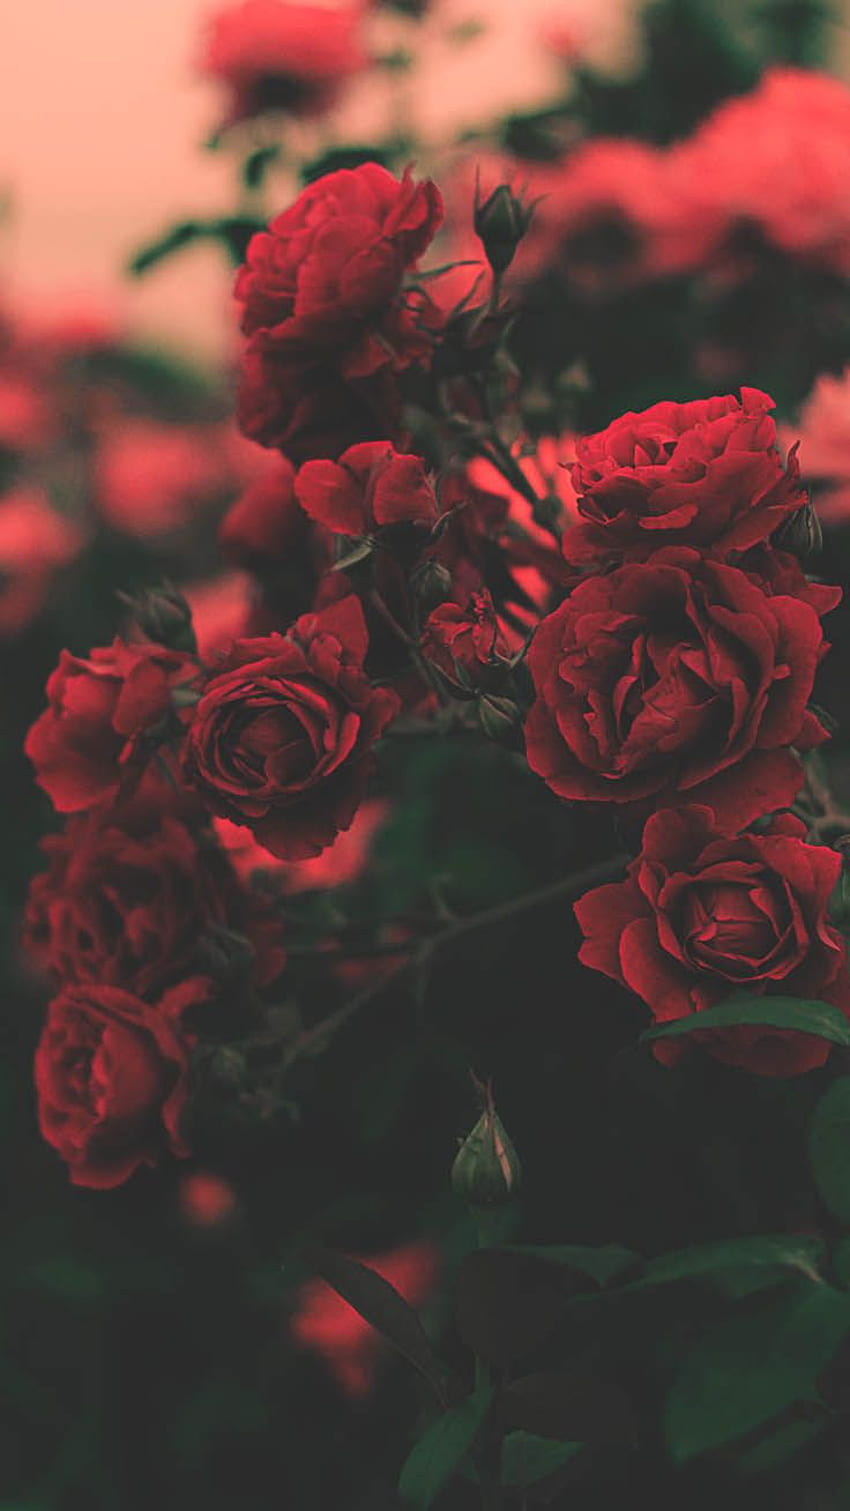 Bạn đang đi tìm kiếm hình nền đẹp với hoa hồng và aesthetic của hoa hồng? Hãy nhấp chuột vào để khám phá đầy đủ vẻ đẹp quyến rũ của những bông hoa hồng hoang sơ. Hãy cảm nhận sự tĩnh lặng và thanh khiết từ chúng.